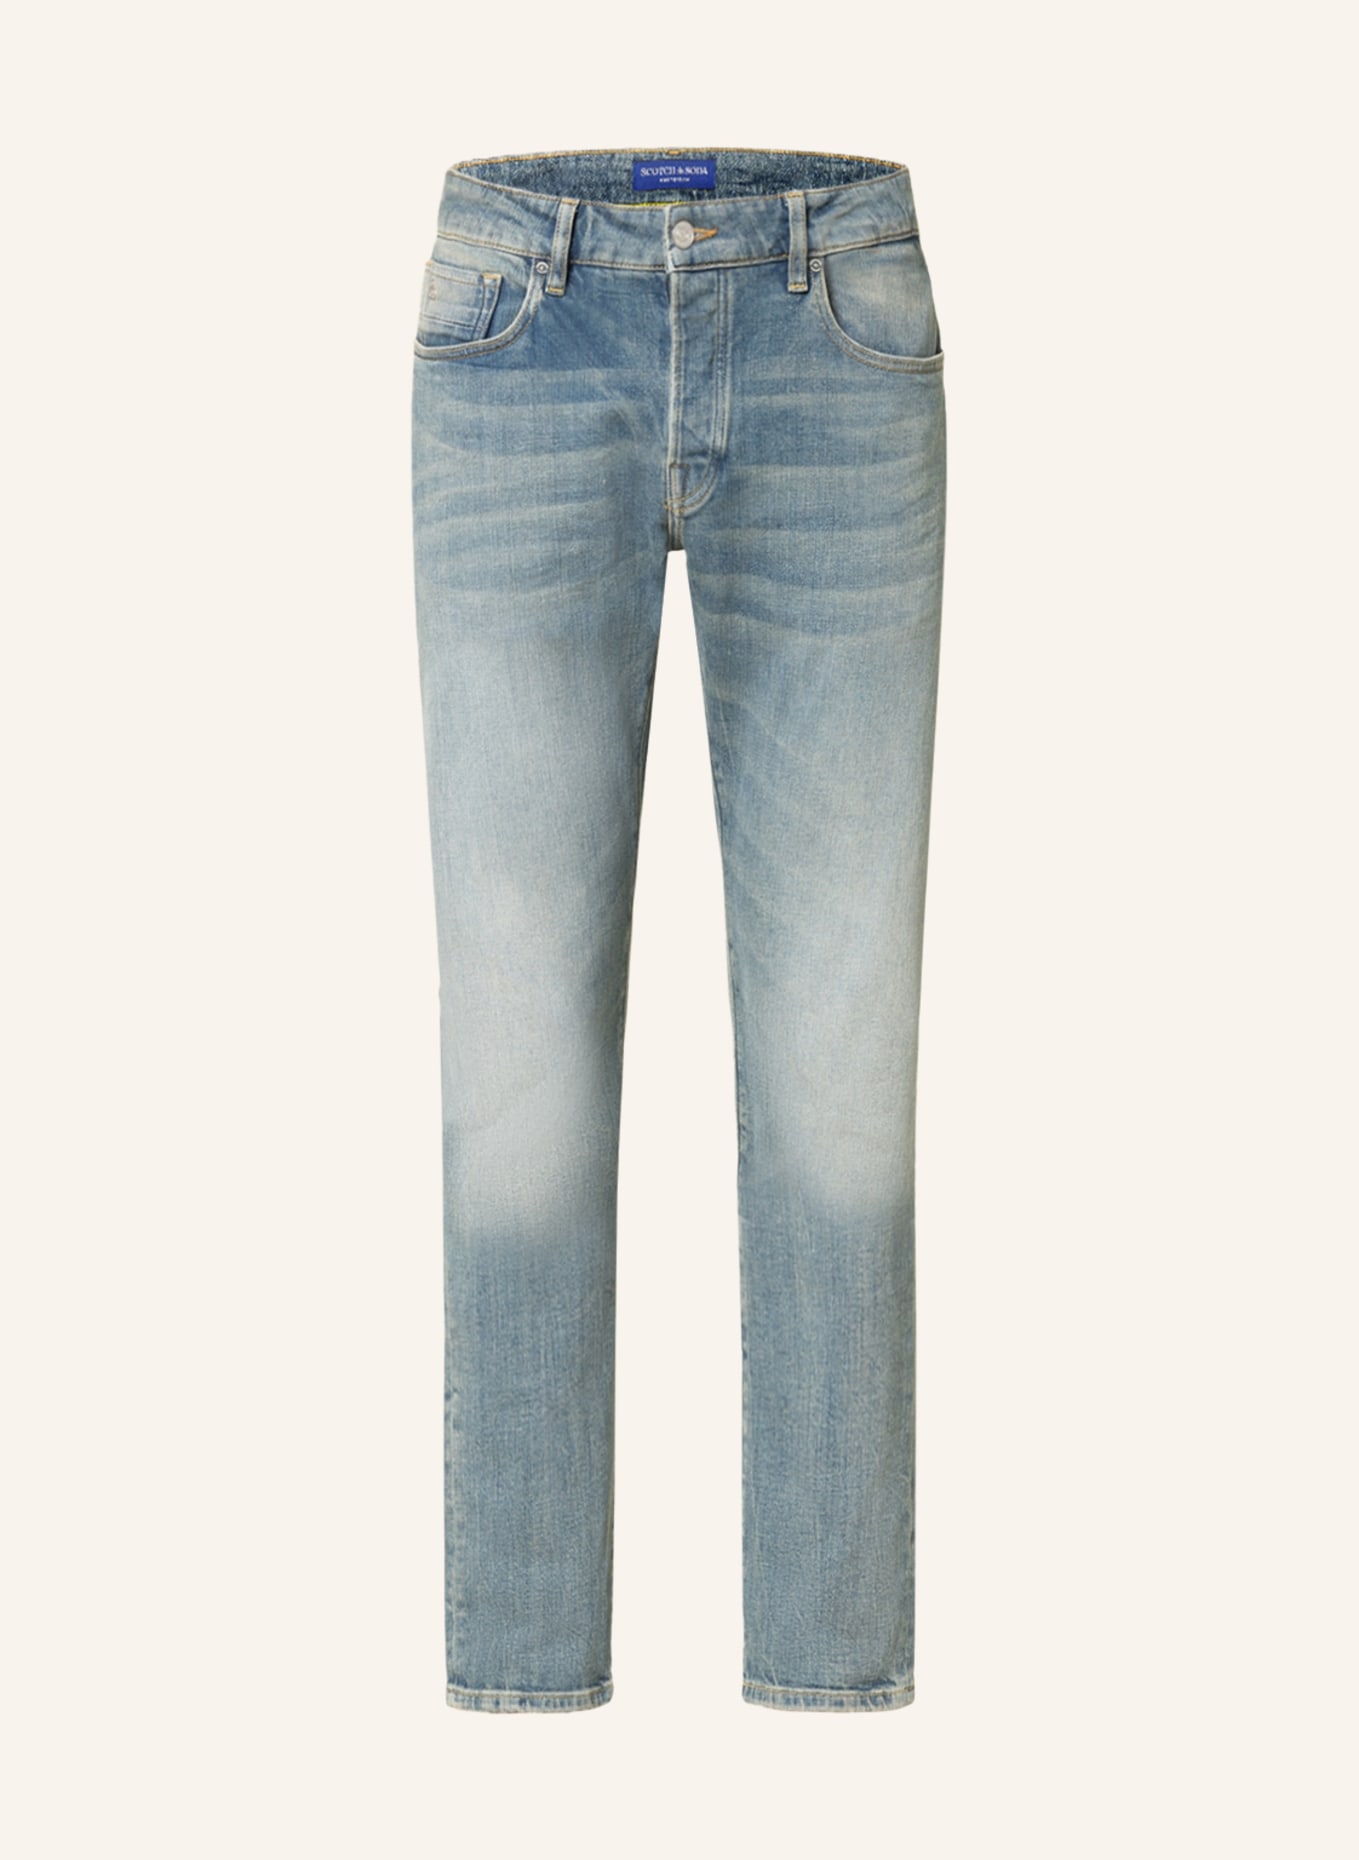 SCOTCH & SODA Jeans RALSTON Regular Slim Fit, Farbe: 5234 Scrape And Move (Bild 1)